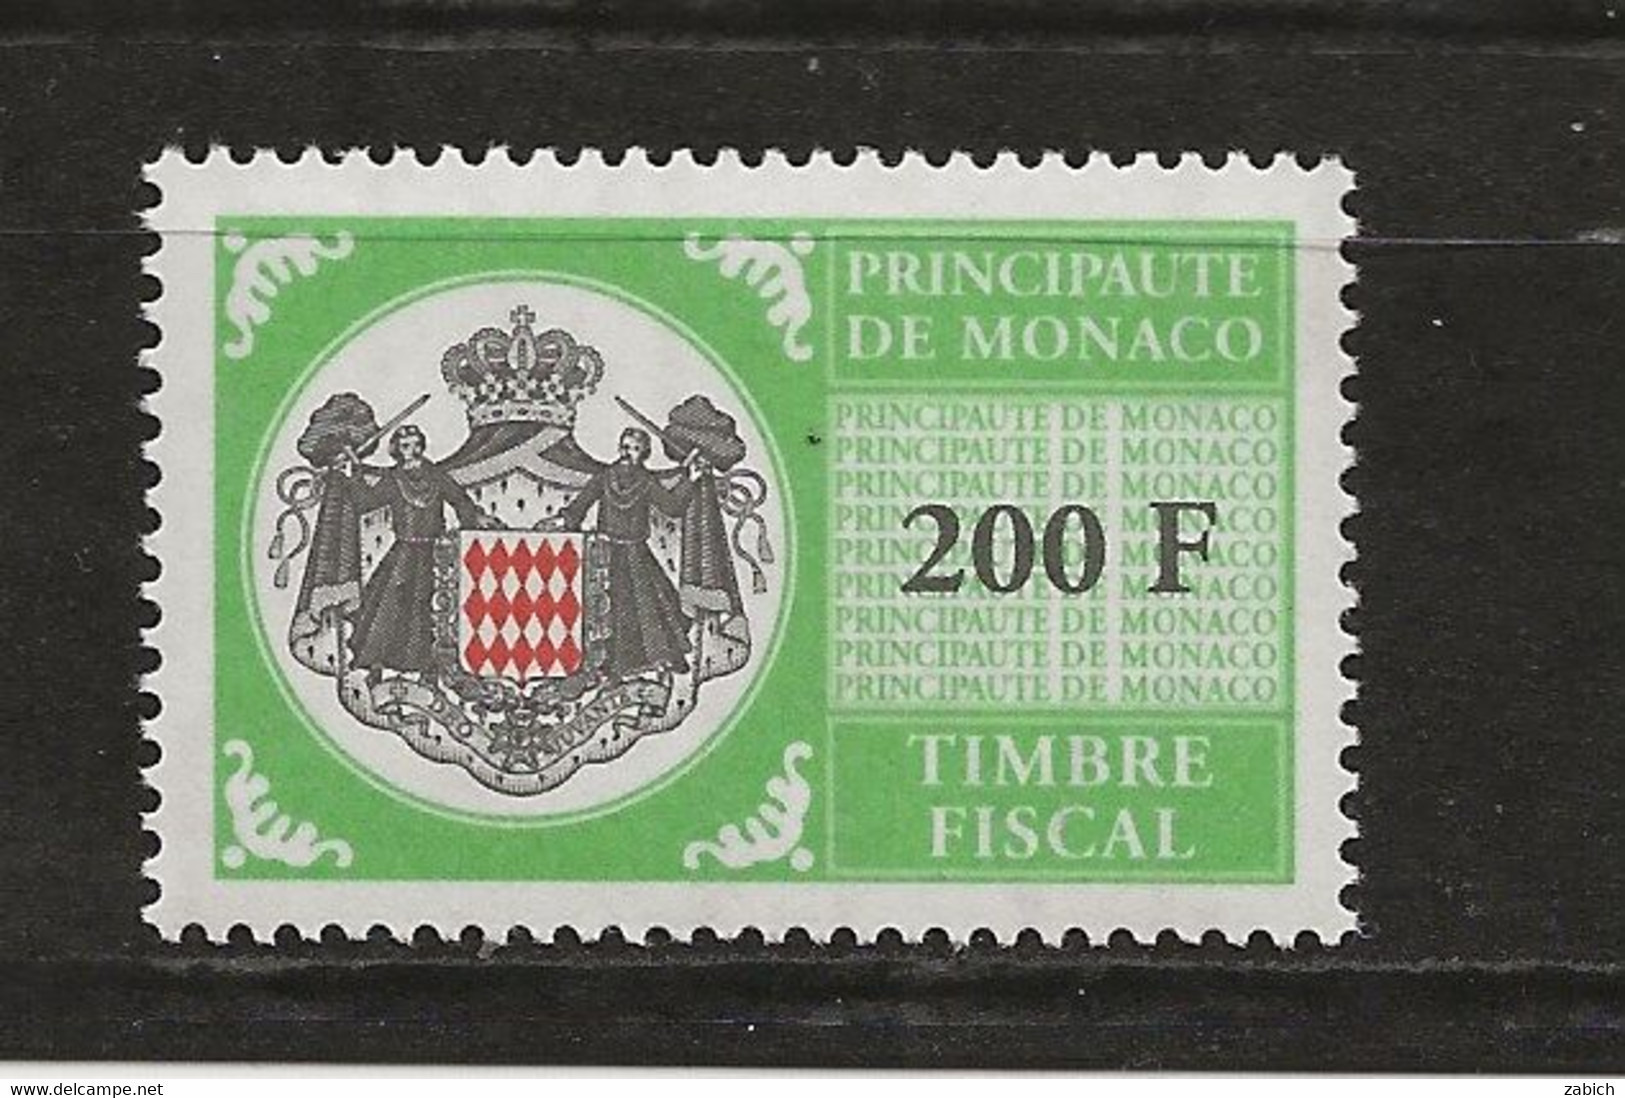 TIMBRES FISCAUX DE MONACO SERIE UNIFIEE N° 108   200F Vert Jaune (**) - Revenue